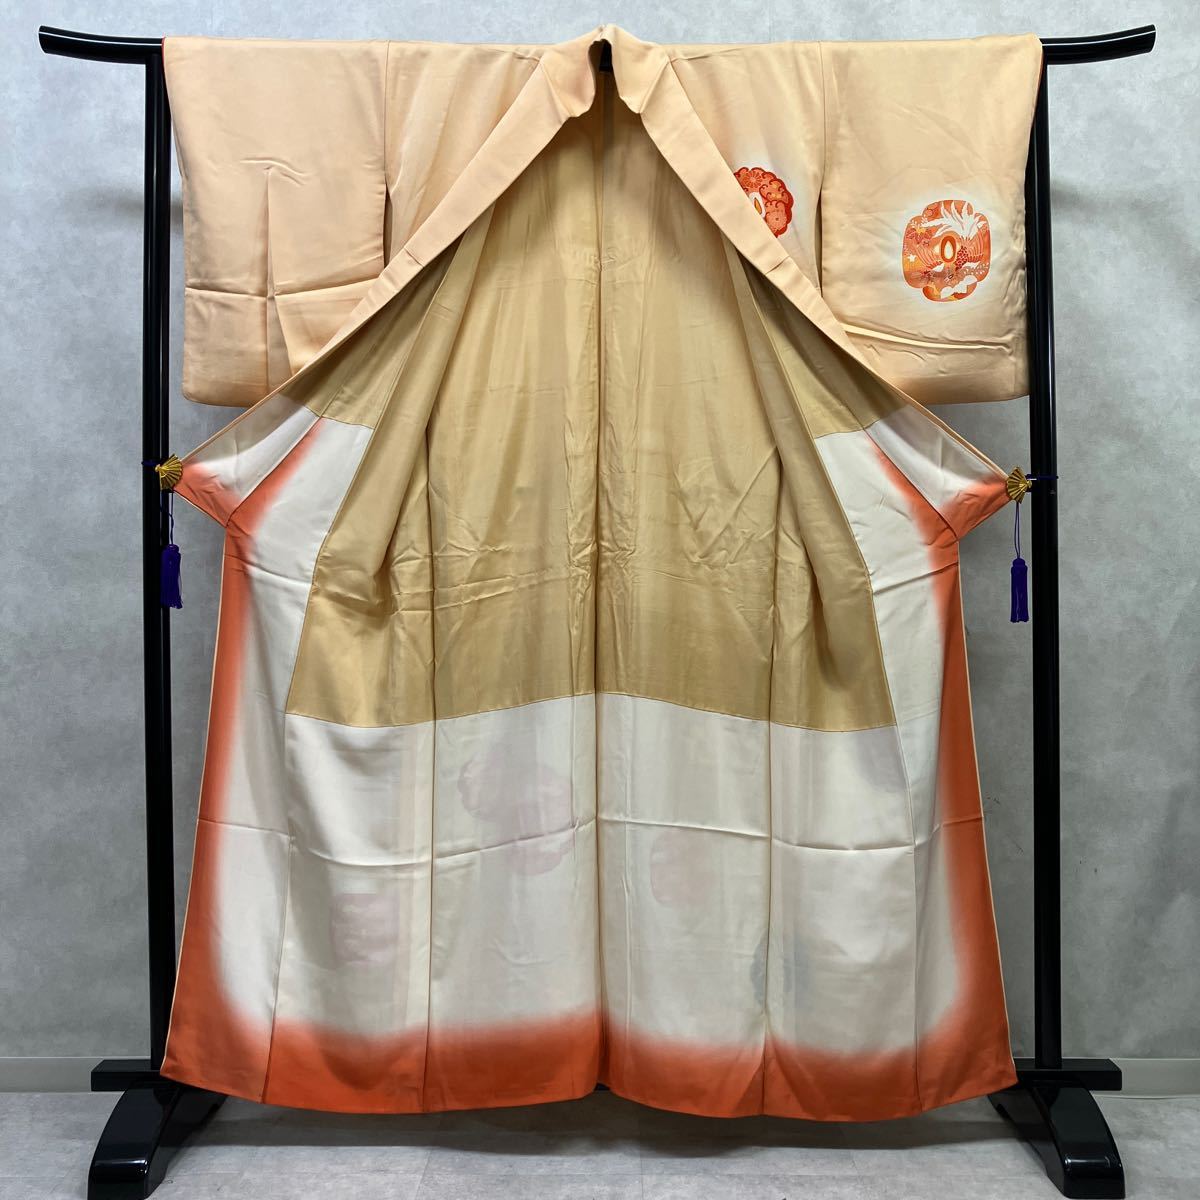  кимоно 　...　... шёлк 　 включено  низ  ...　 оранжевый 　 переделка  　 вышивание  　   ...　... включено ...　 новичок  　... длина 　160cm  длина рукава 　65cm B20-9y